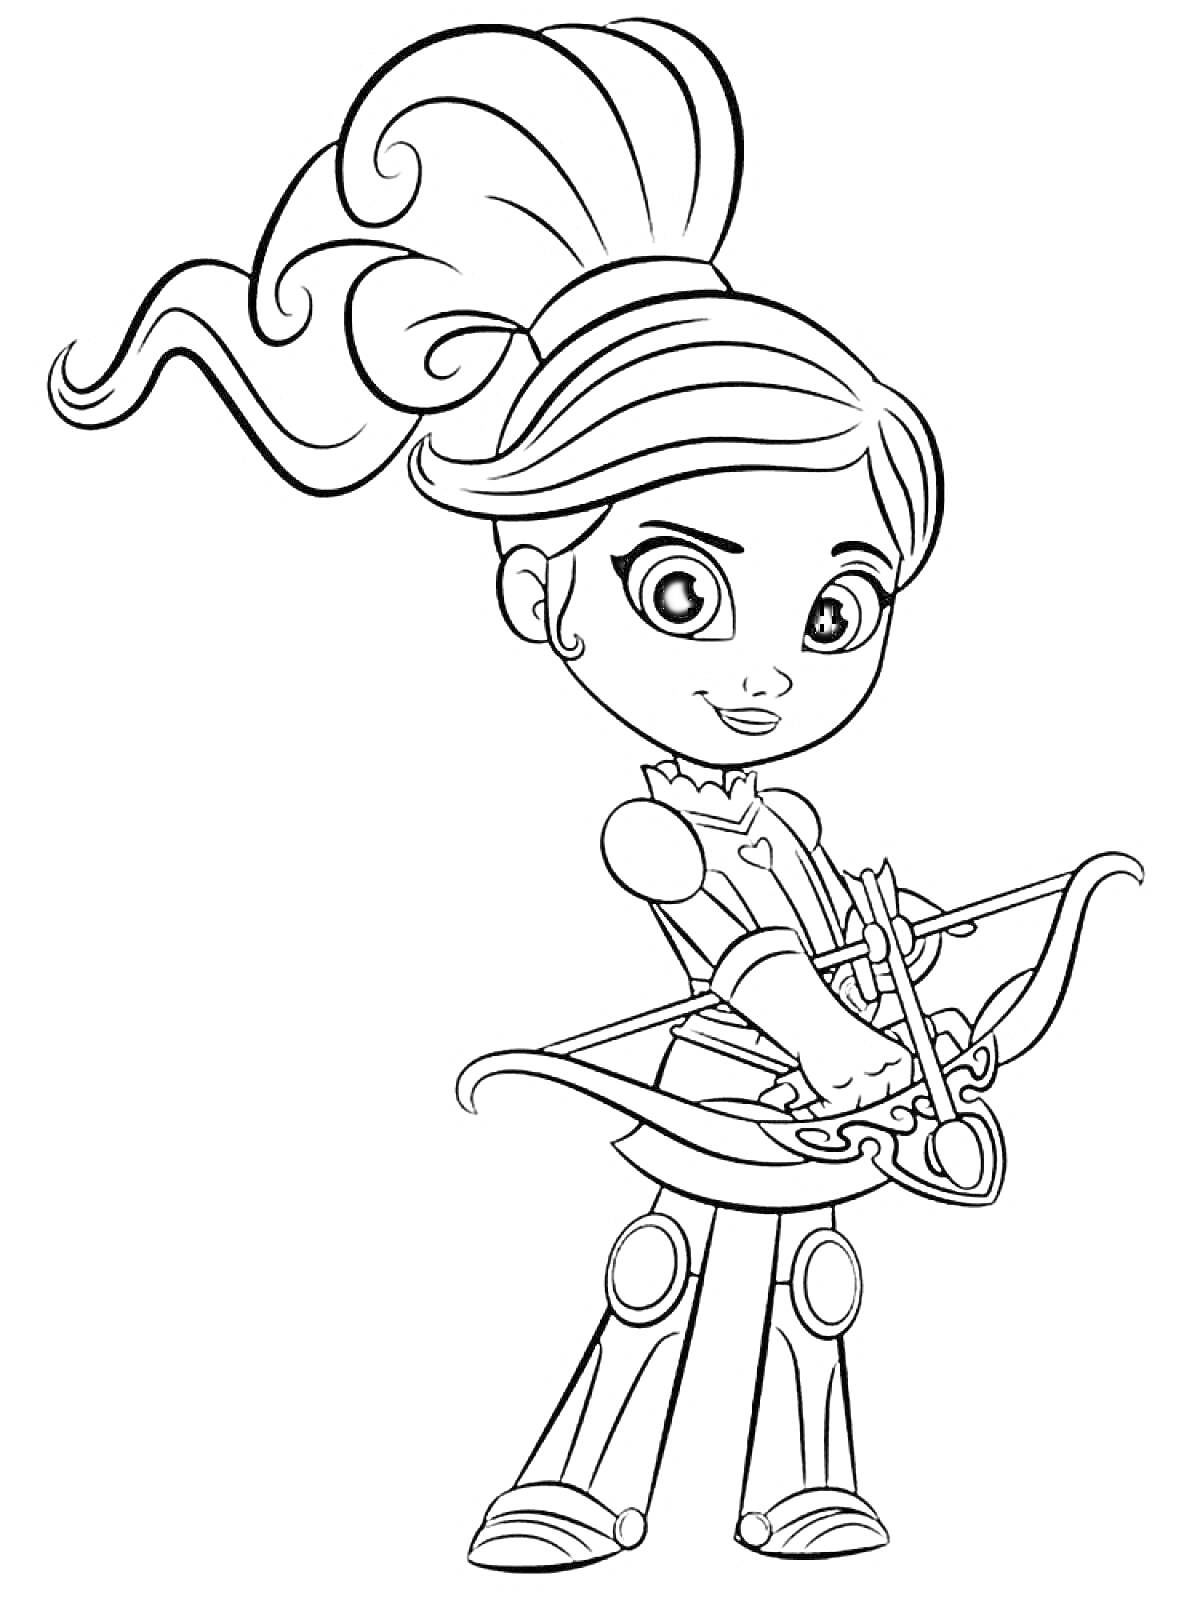 Раскраска Нелла принцесса рыцарь с луком и стрелами